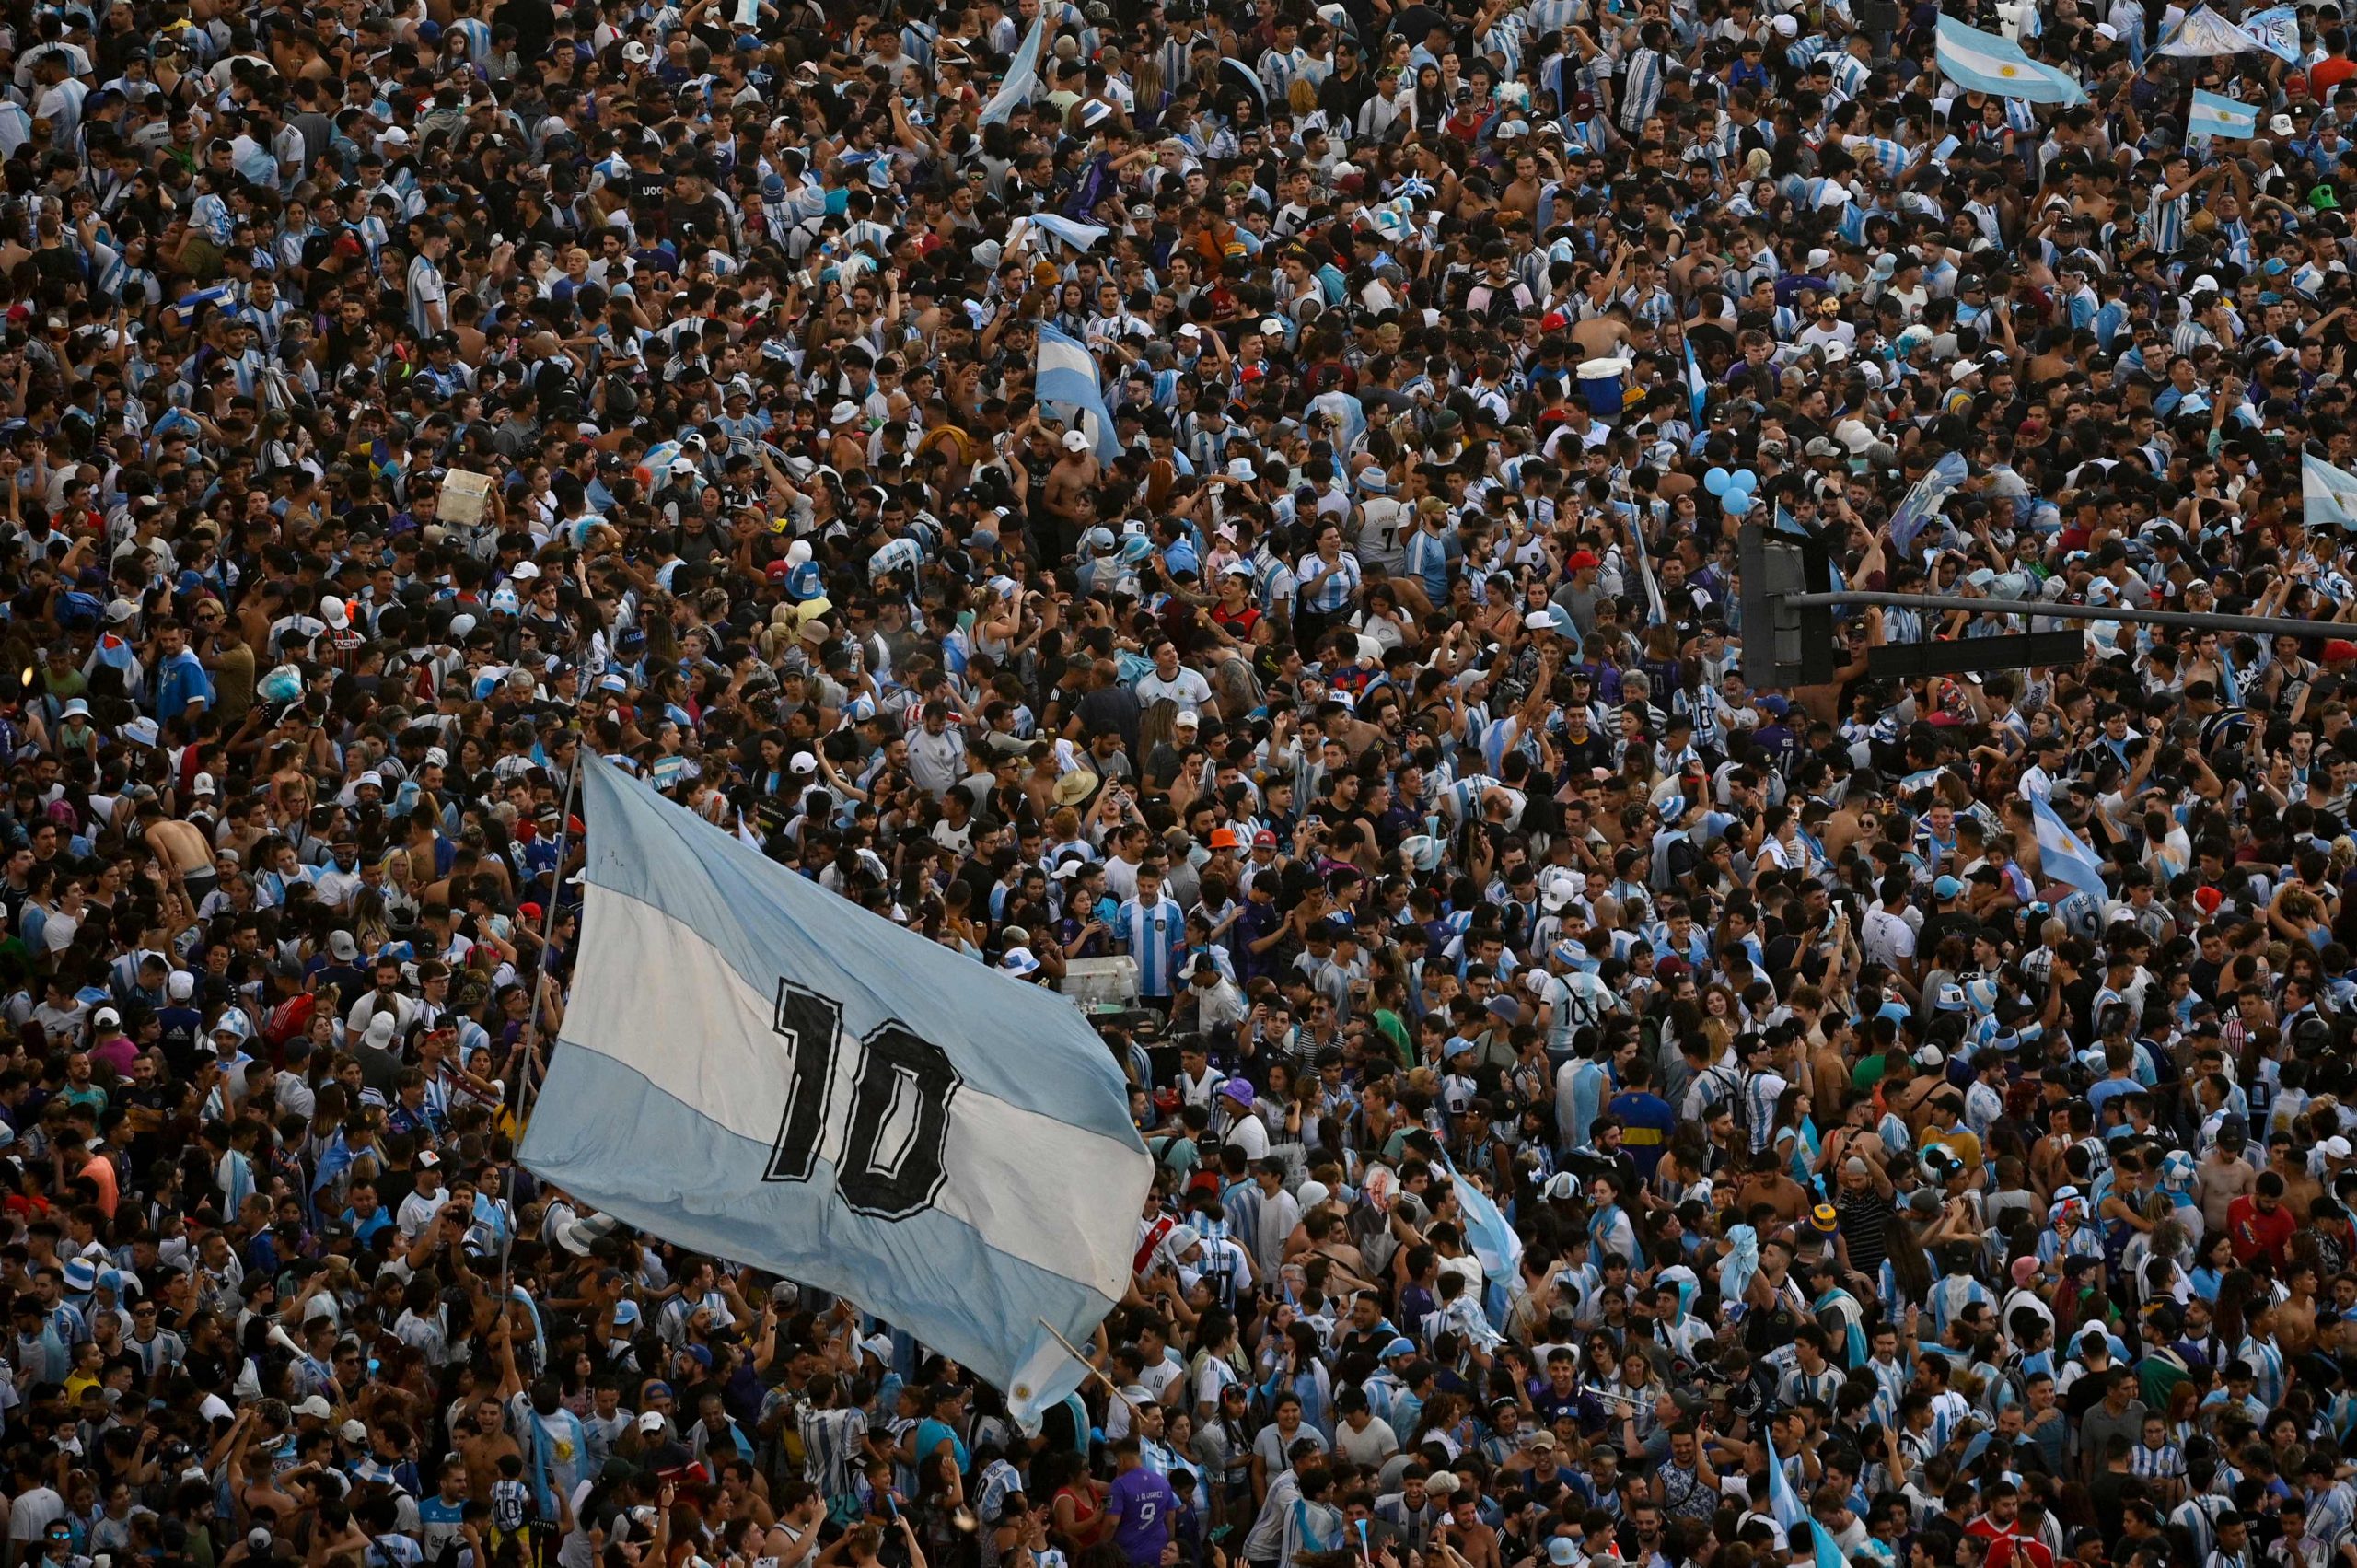 Festejos na Argentina acabam em tragédia